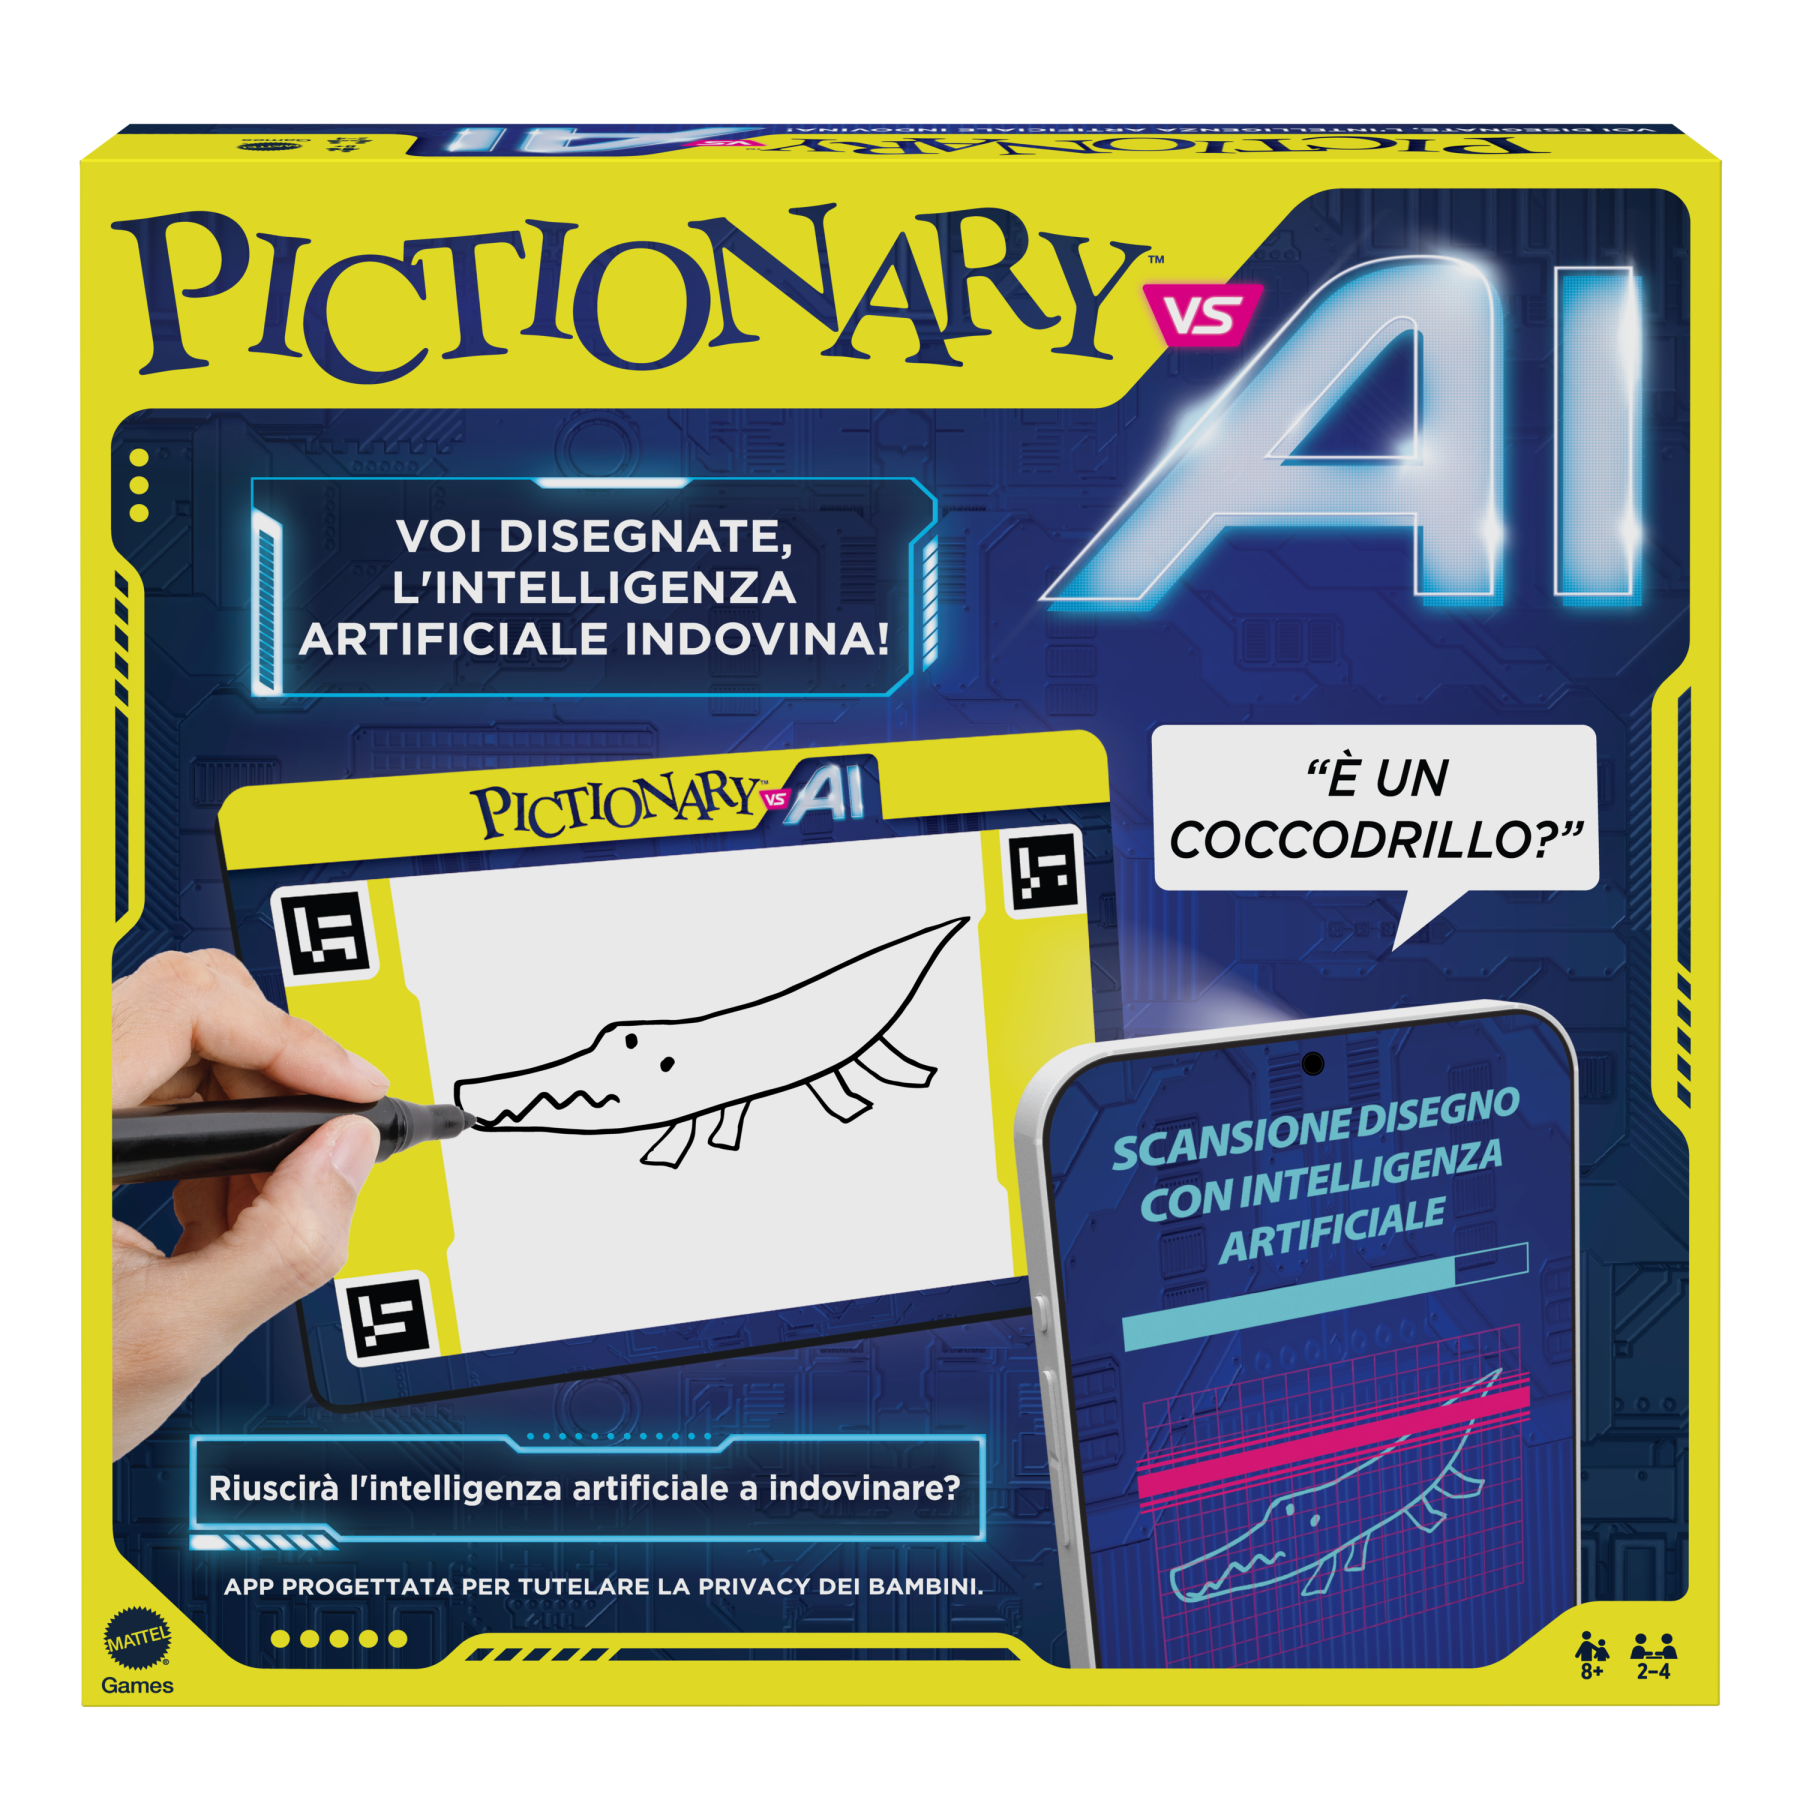 Pictionary vs. ai - la nuova versione di pictionary con l'intelligenza artificiale, i giocatori disegnano e l'ia indovina - MATTEL GAMES